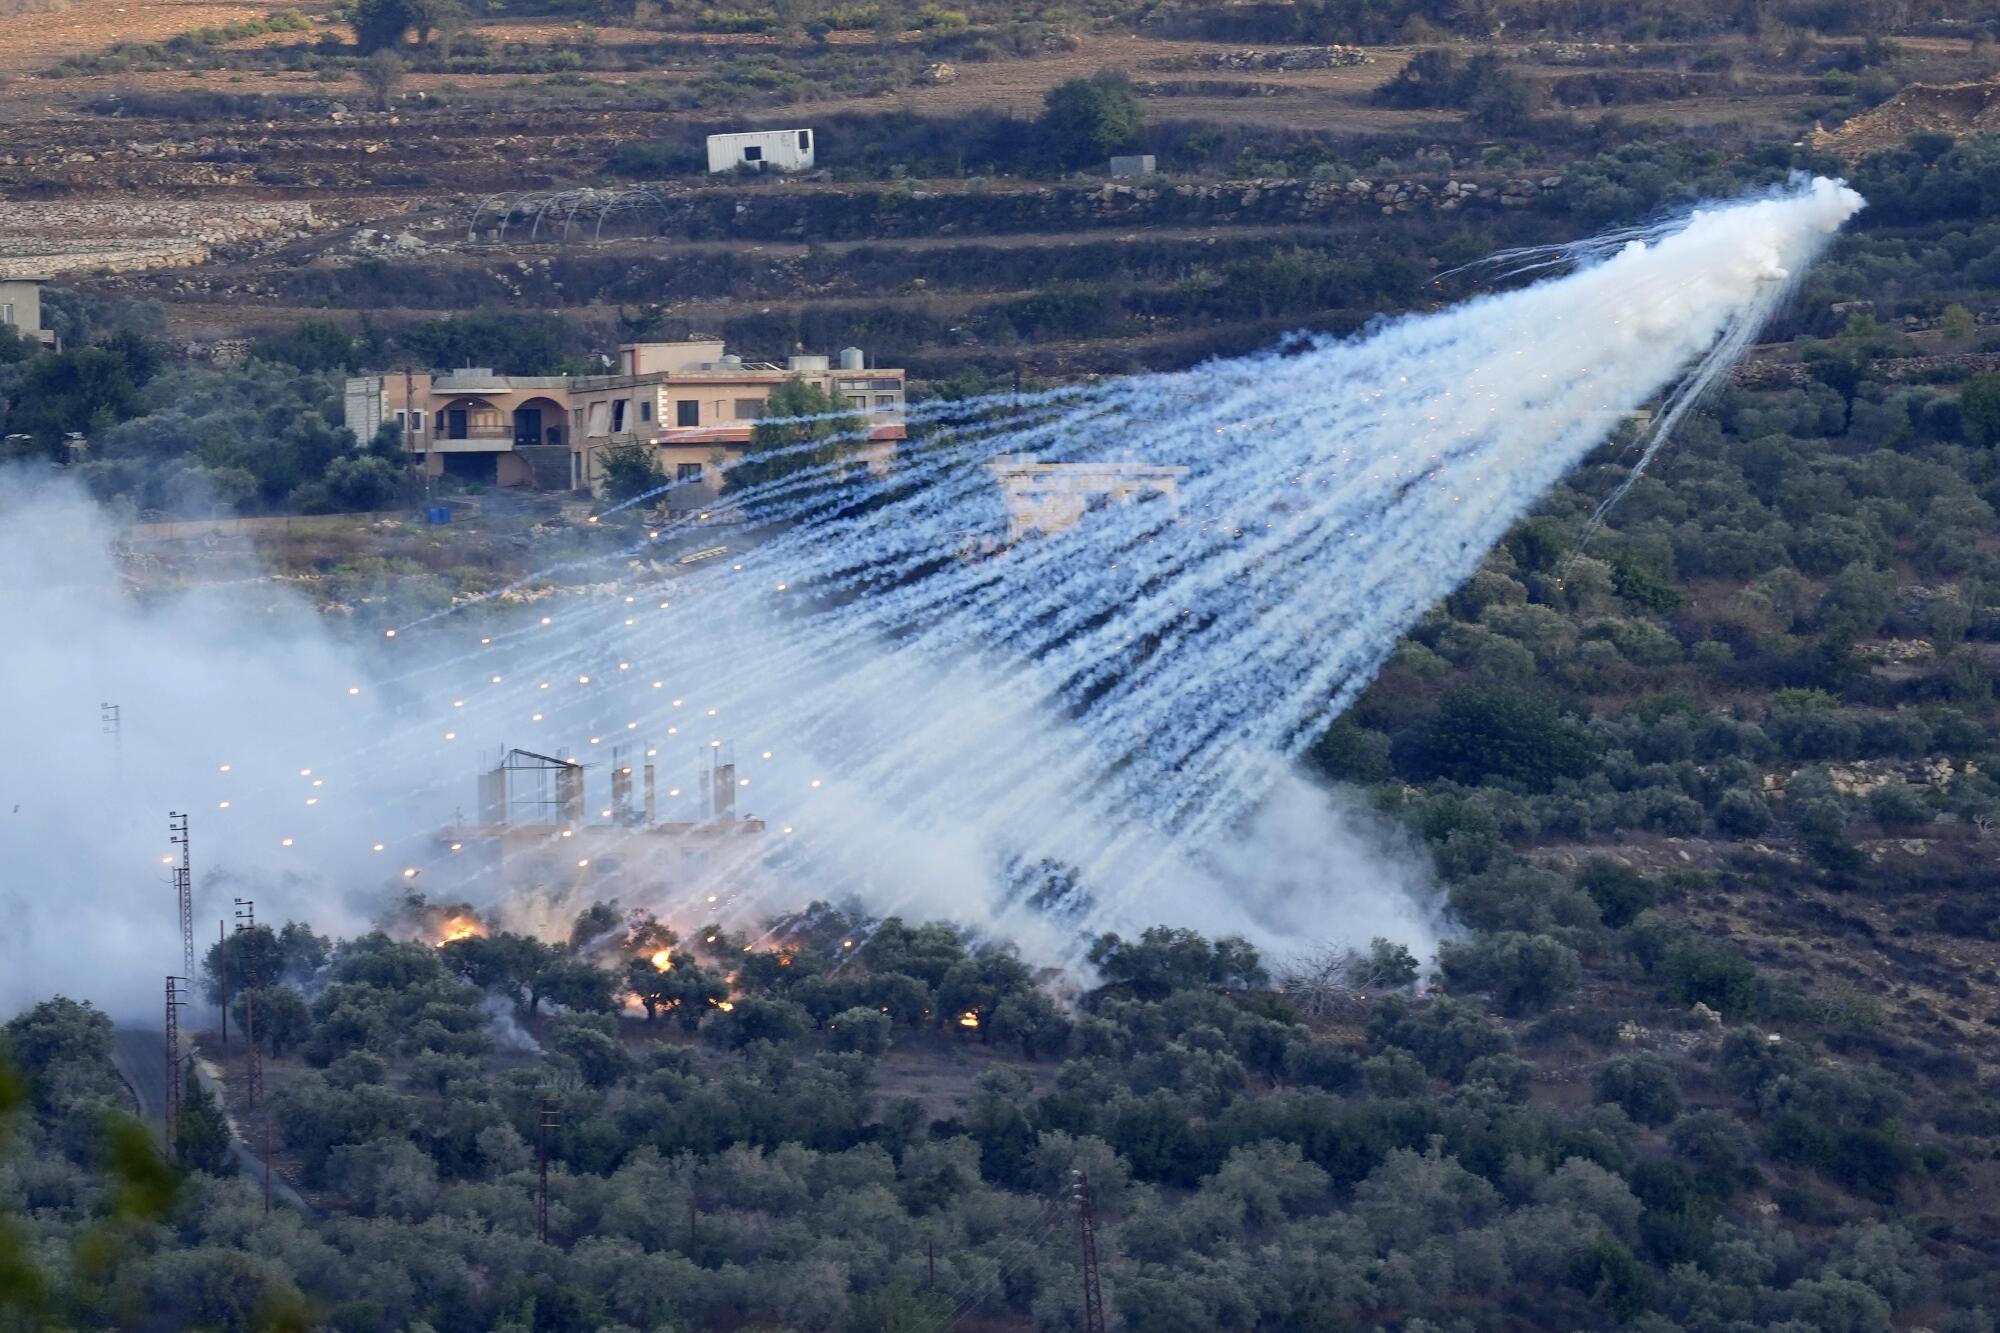 一枚疑似白磷的以色列炮弹在住宅和农田上空爆炸。